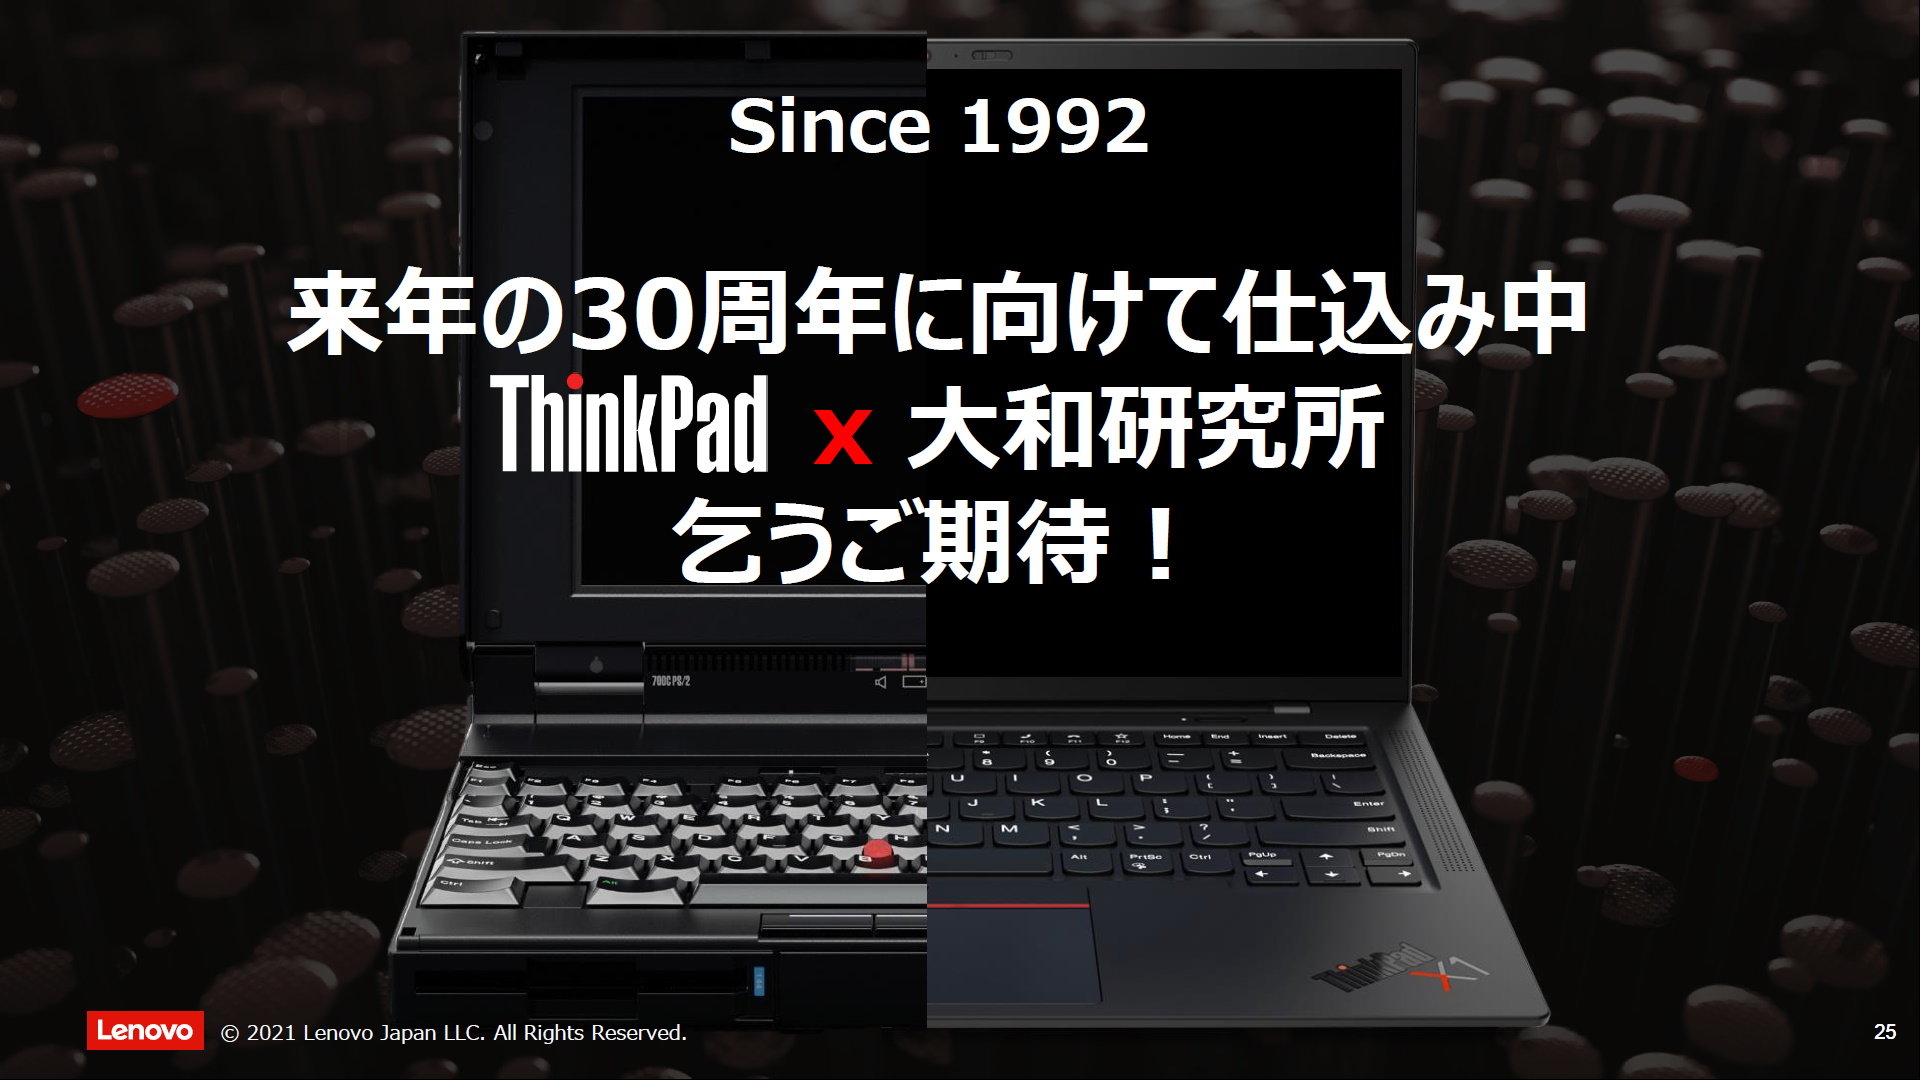 変わらず 変わってきた Thinkpad 30周年記念モデルは出る 大和研究所のリーダーに聞く Itmedia Pc User